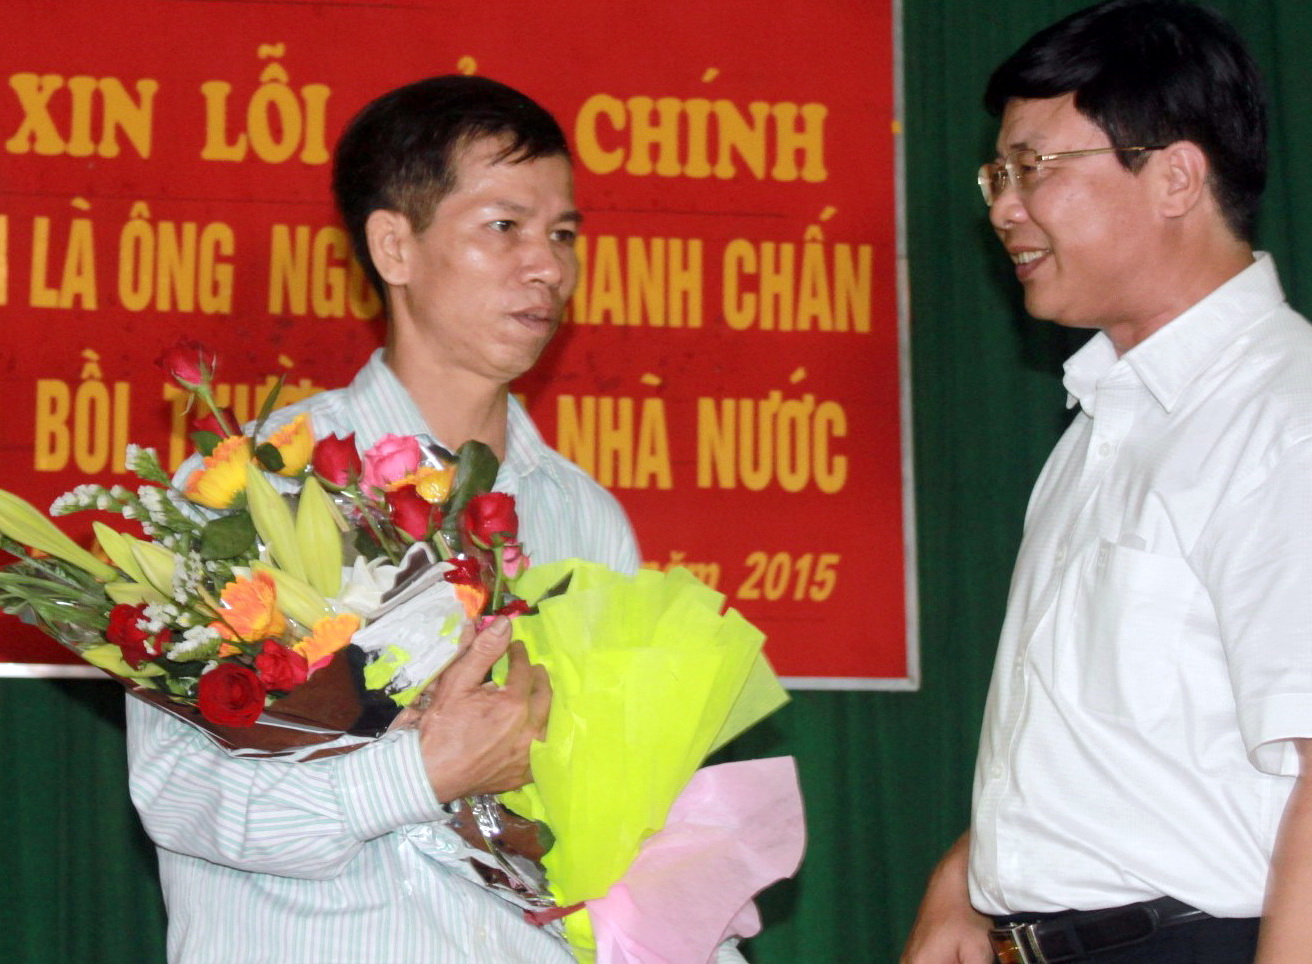 Ông Chấn (trái) xúc động nhận hoa do đại diện Tòa án nhân dân Tối cao trao tặng trong buổi xin lỗi công khai ngày 17-4- Ảnh: Tâm Lụa